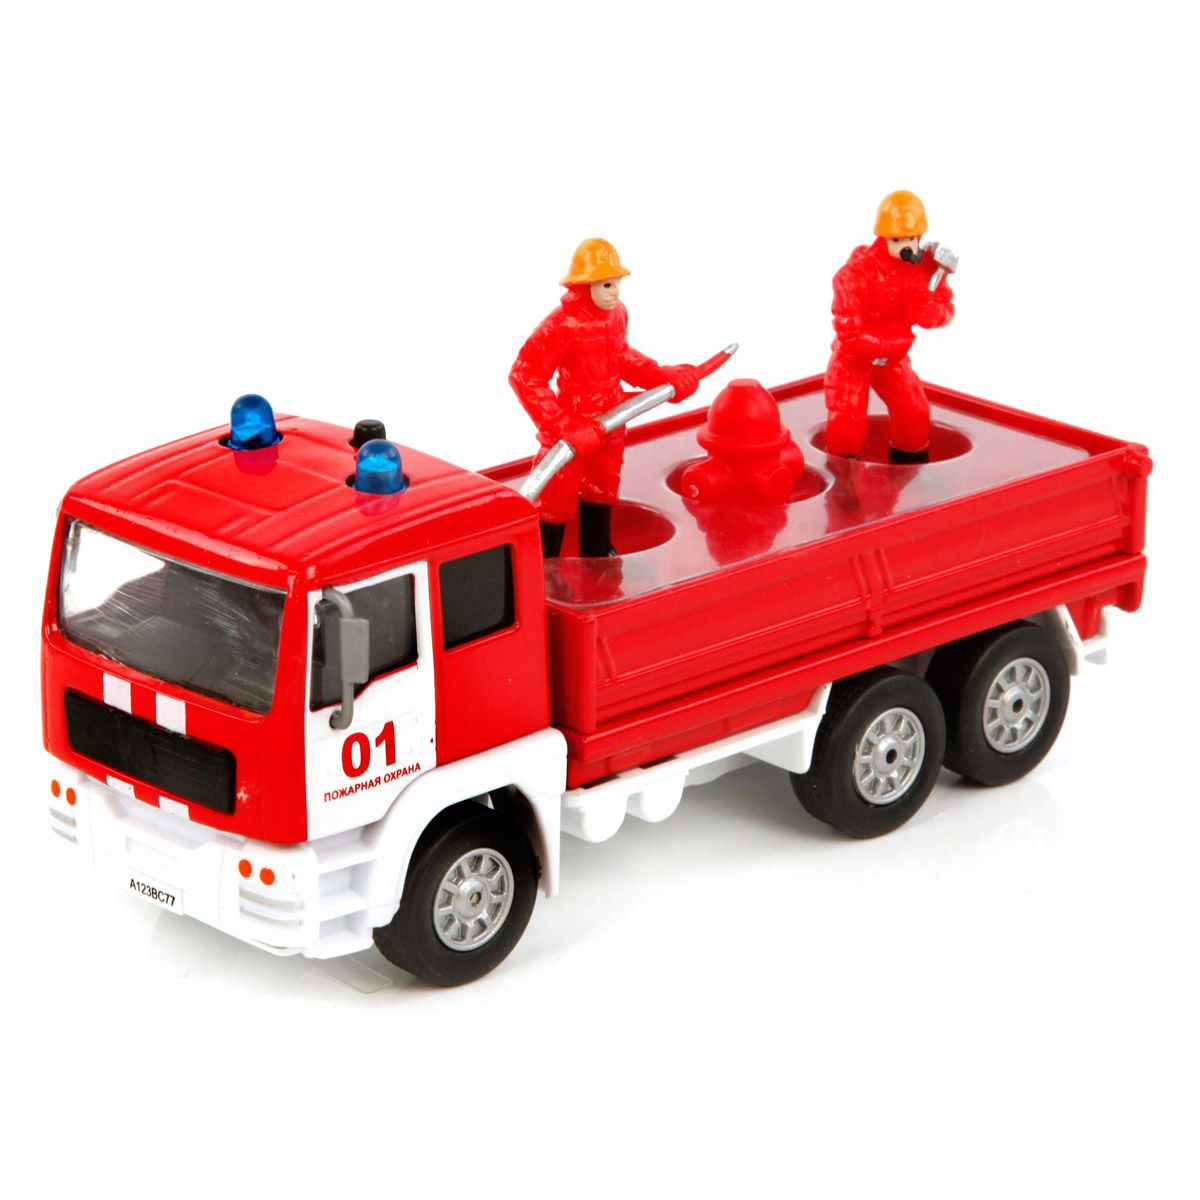 Маленькая пожарная машинка. Пожарный автомобиль Пламенный мотор служба пожаротушения (870081) 1:32. 12671 Пожарная машинка. Игрушка "пожарная машина". Игрушечные пожарные машинки.